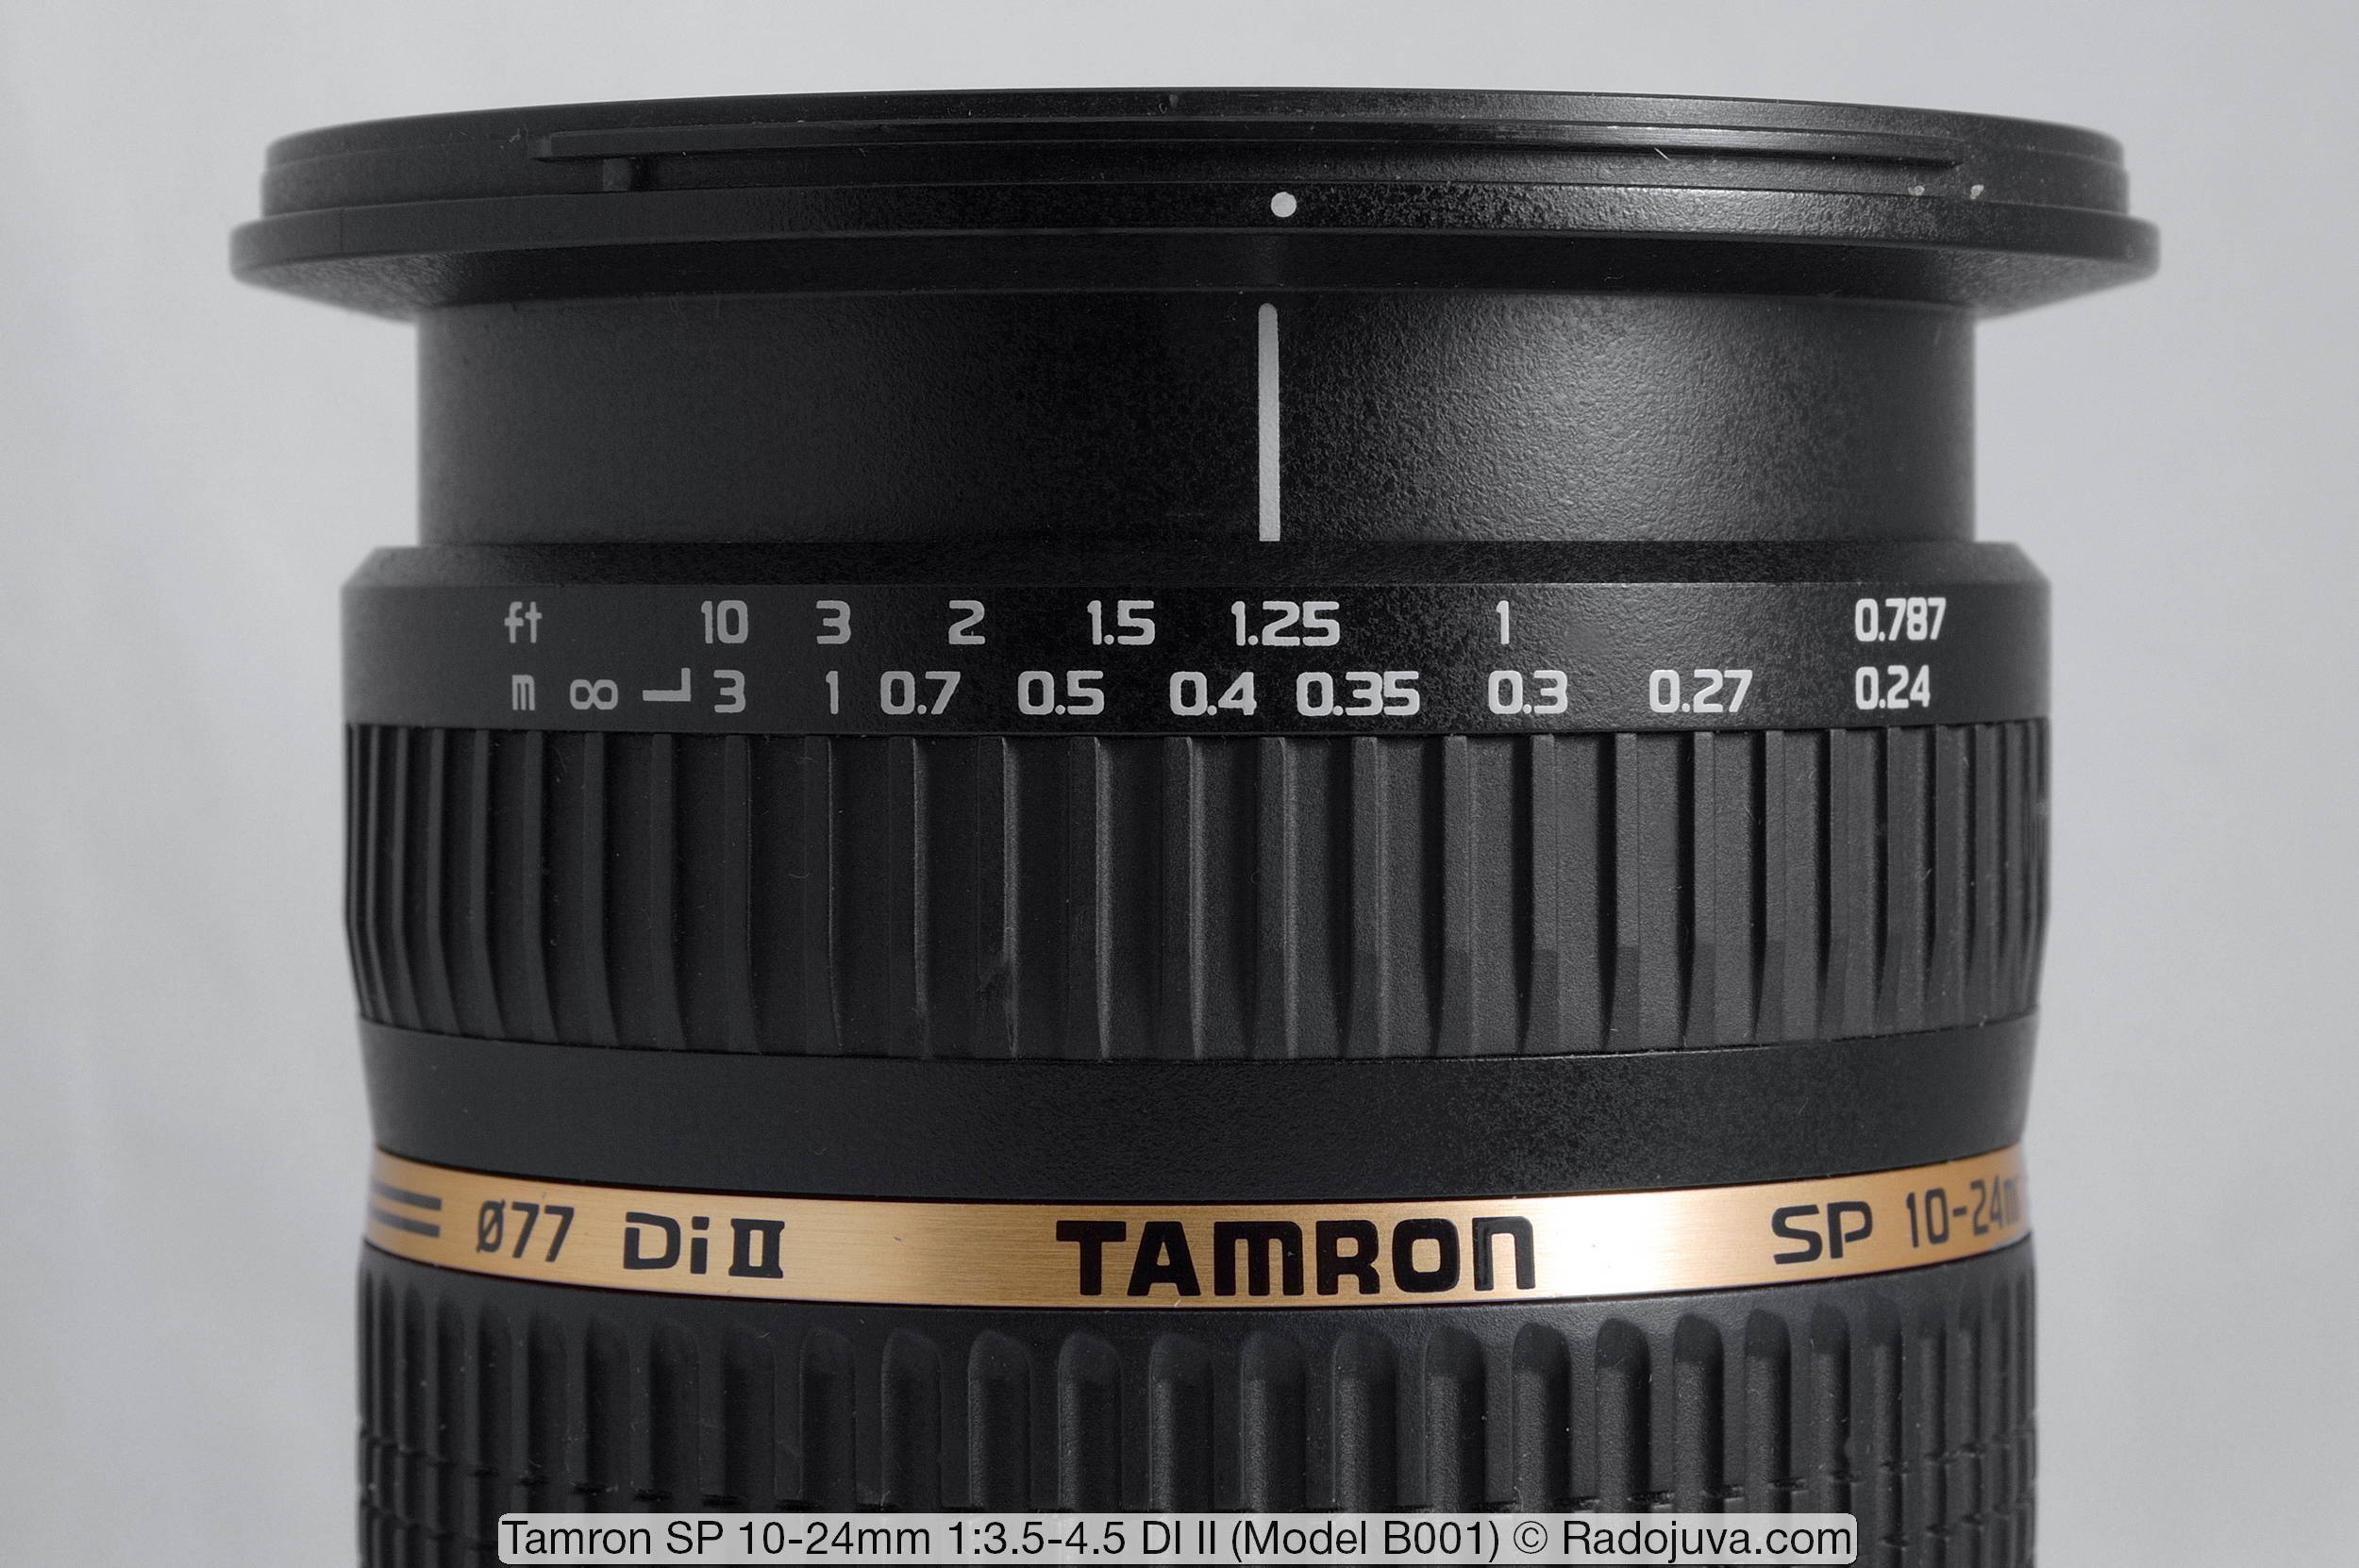 Tamron SP 10-24 mm 1:3.5-4.5 DI II (Modelo B001)